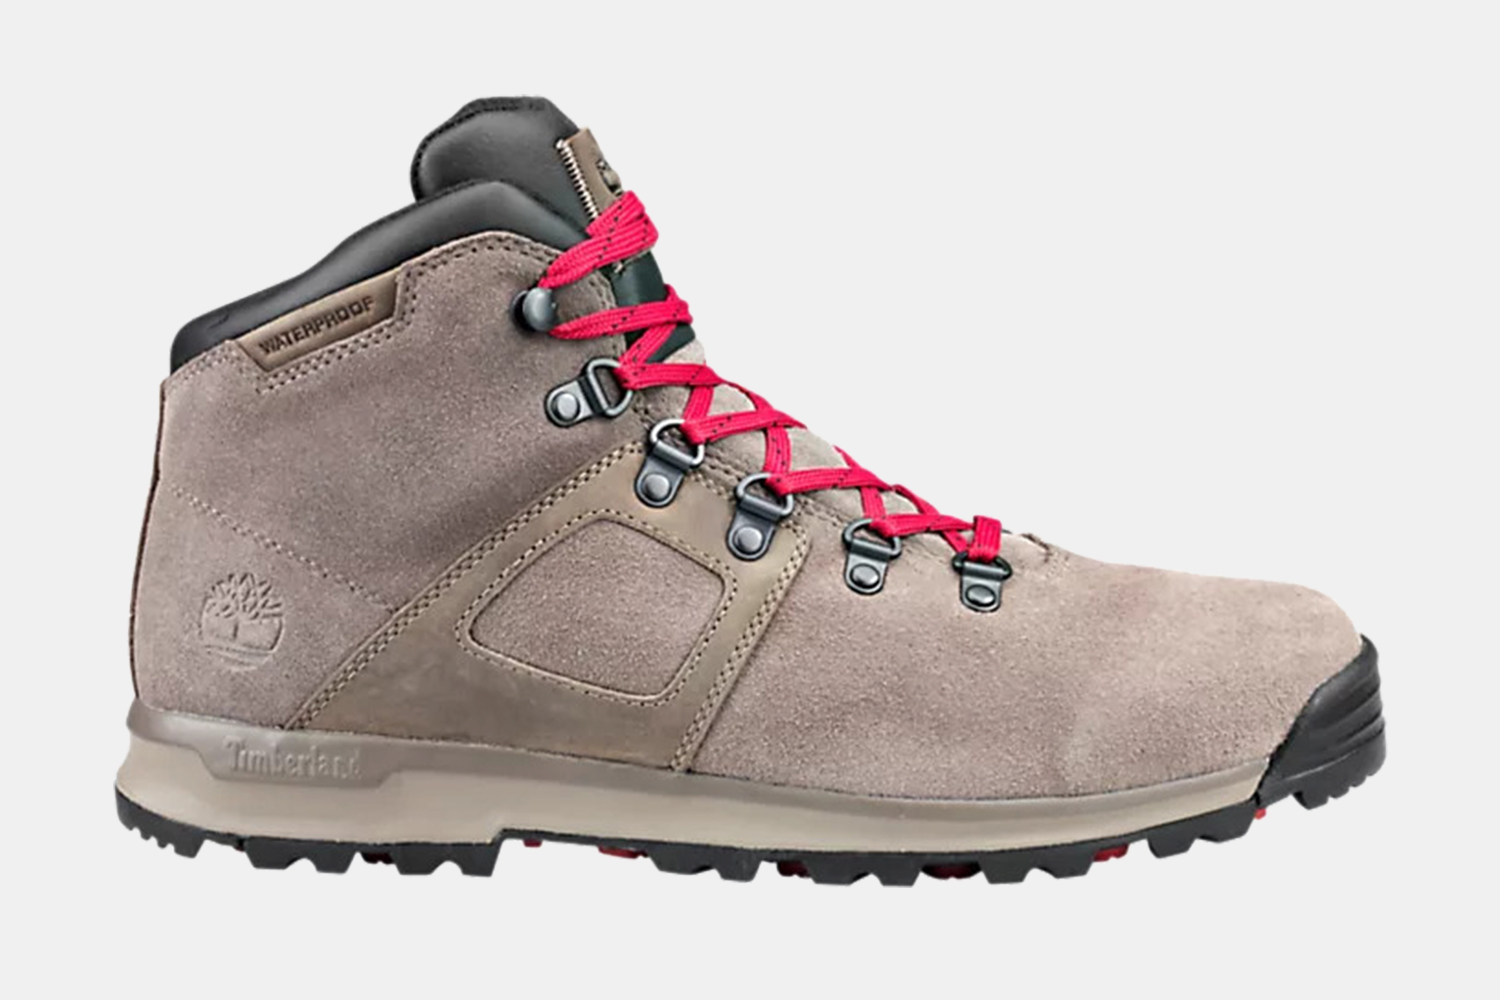 Timberland GT Scramble Waterproof Hiking Boots